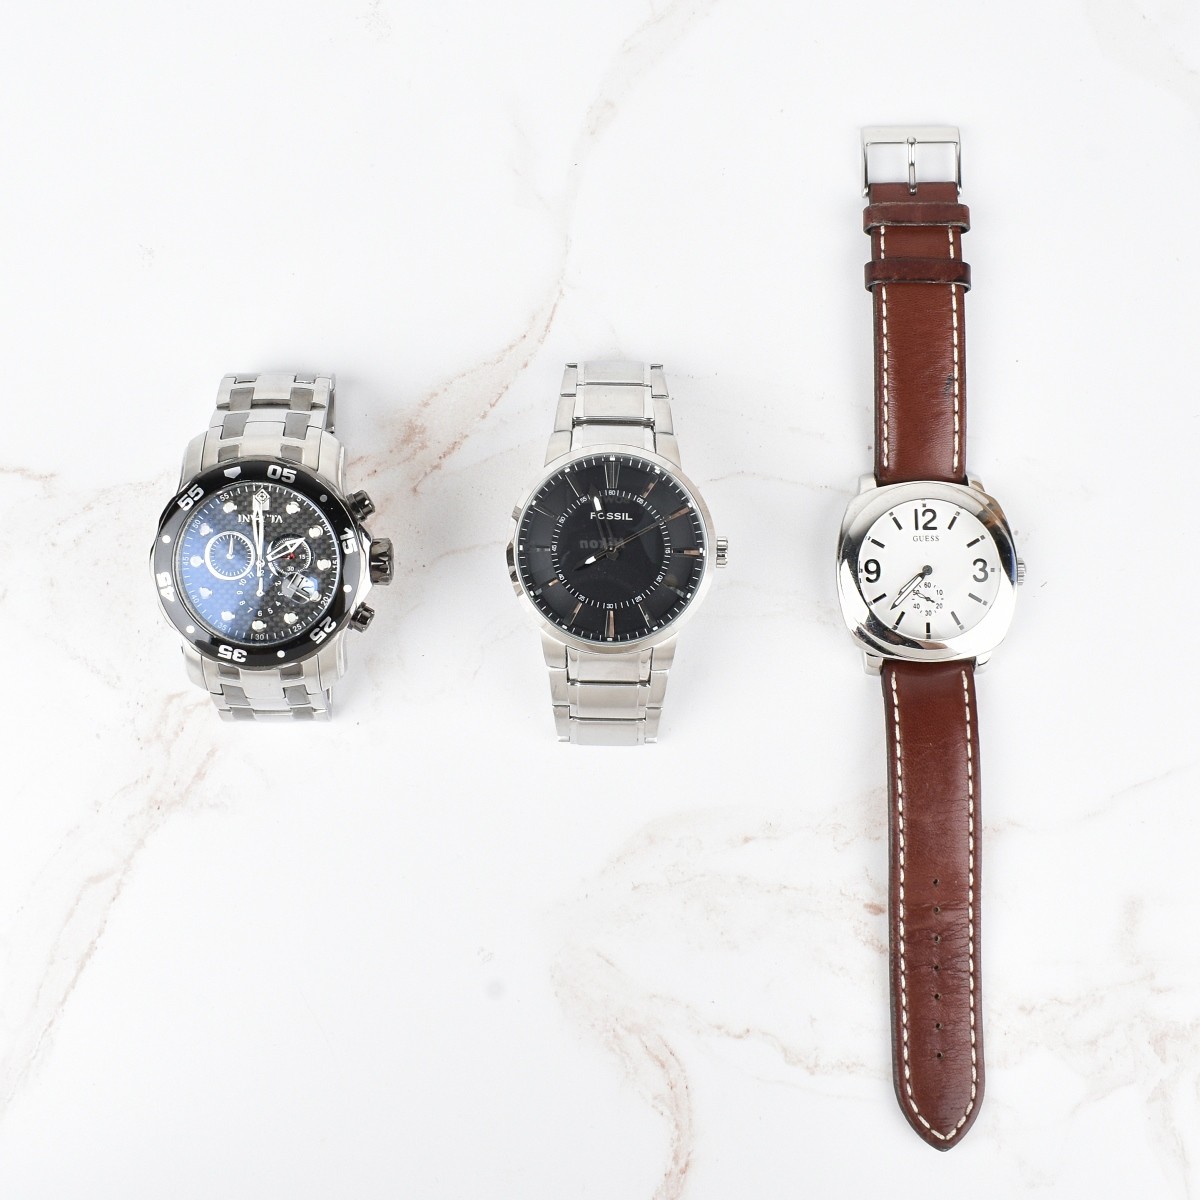 Vintage Assorted Men's Watches